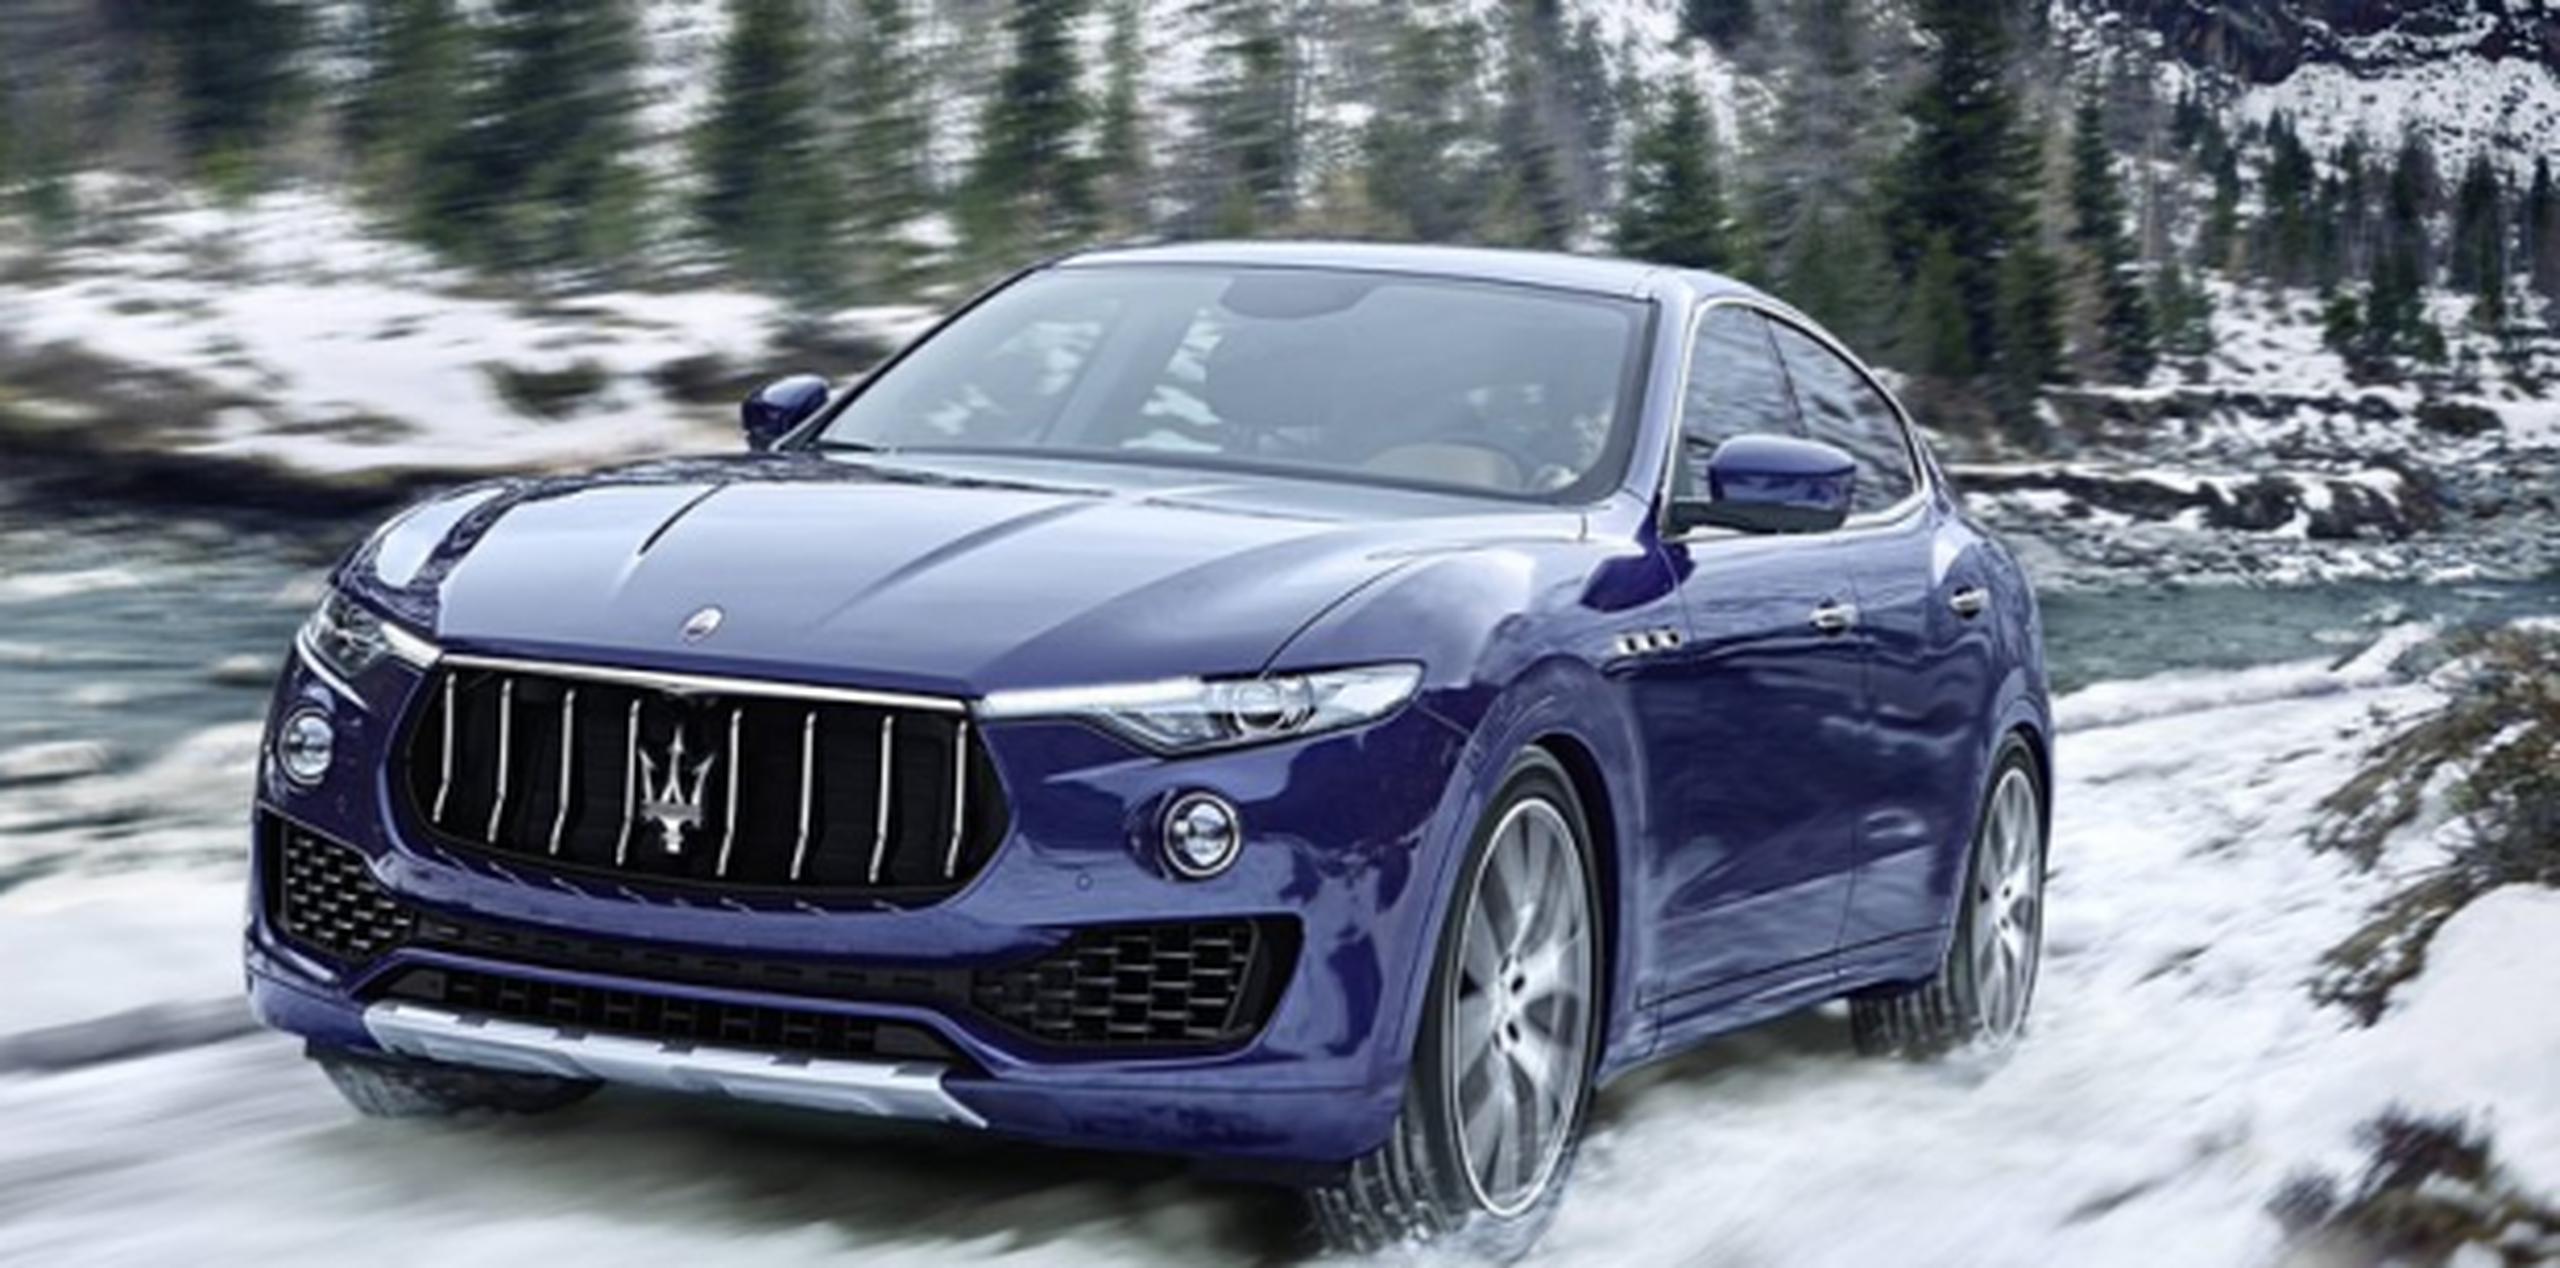 Algunos modelos del Maserati Levante presentan el defecto. (Twitter)